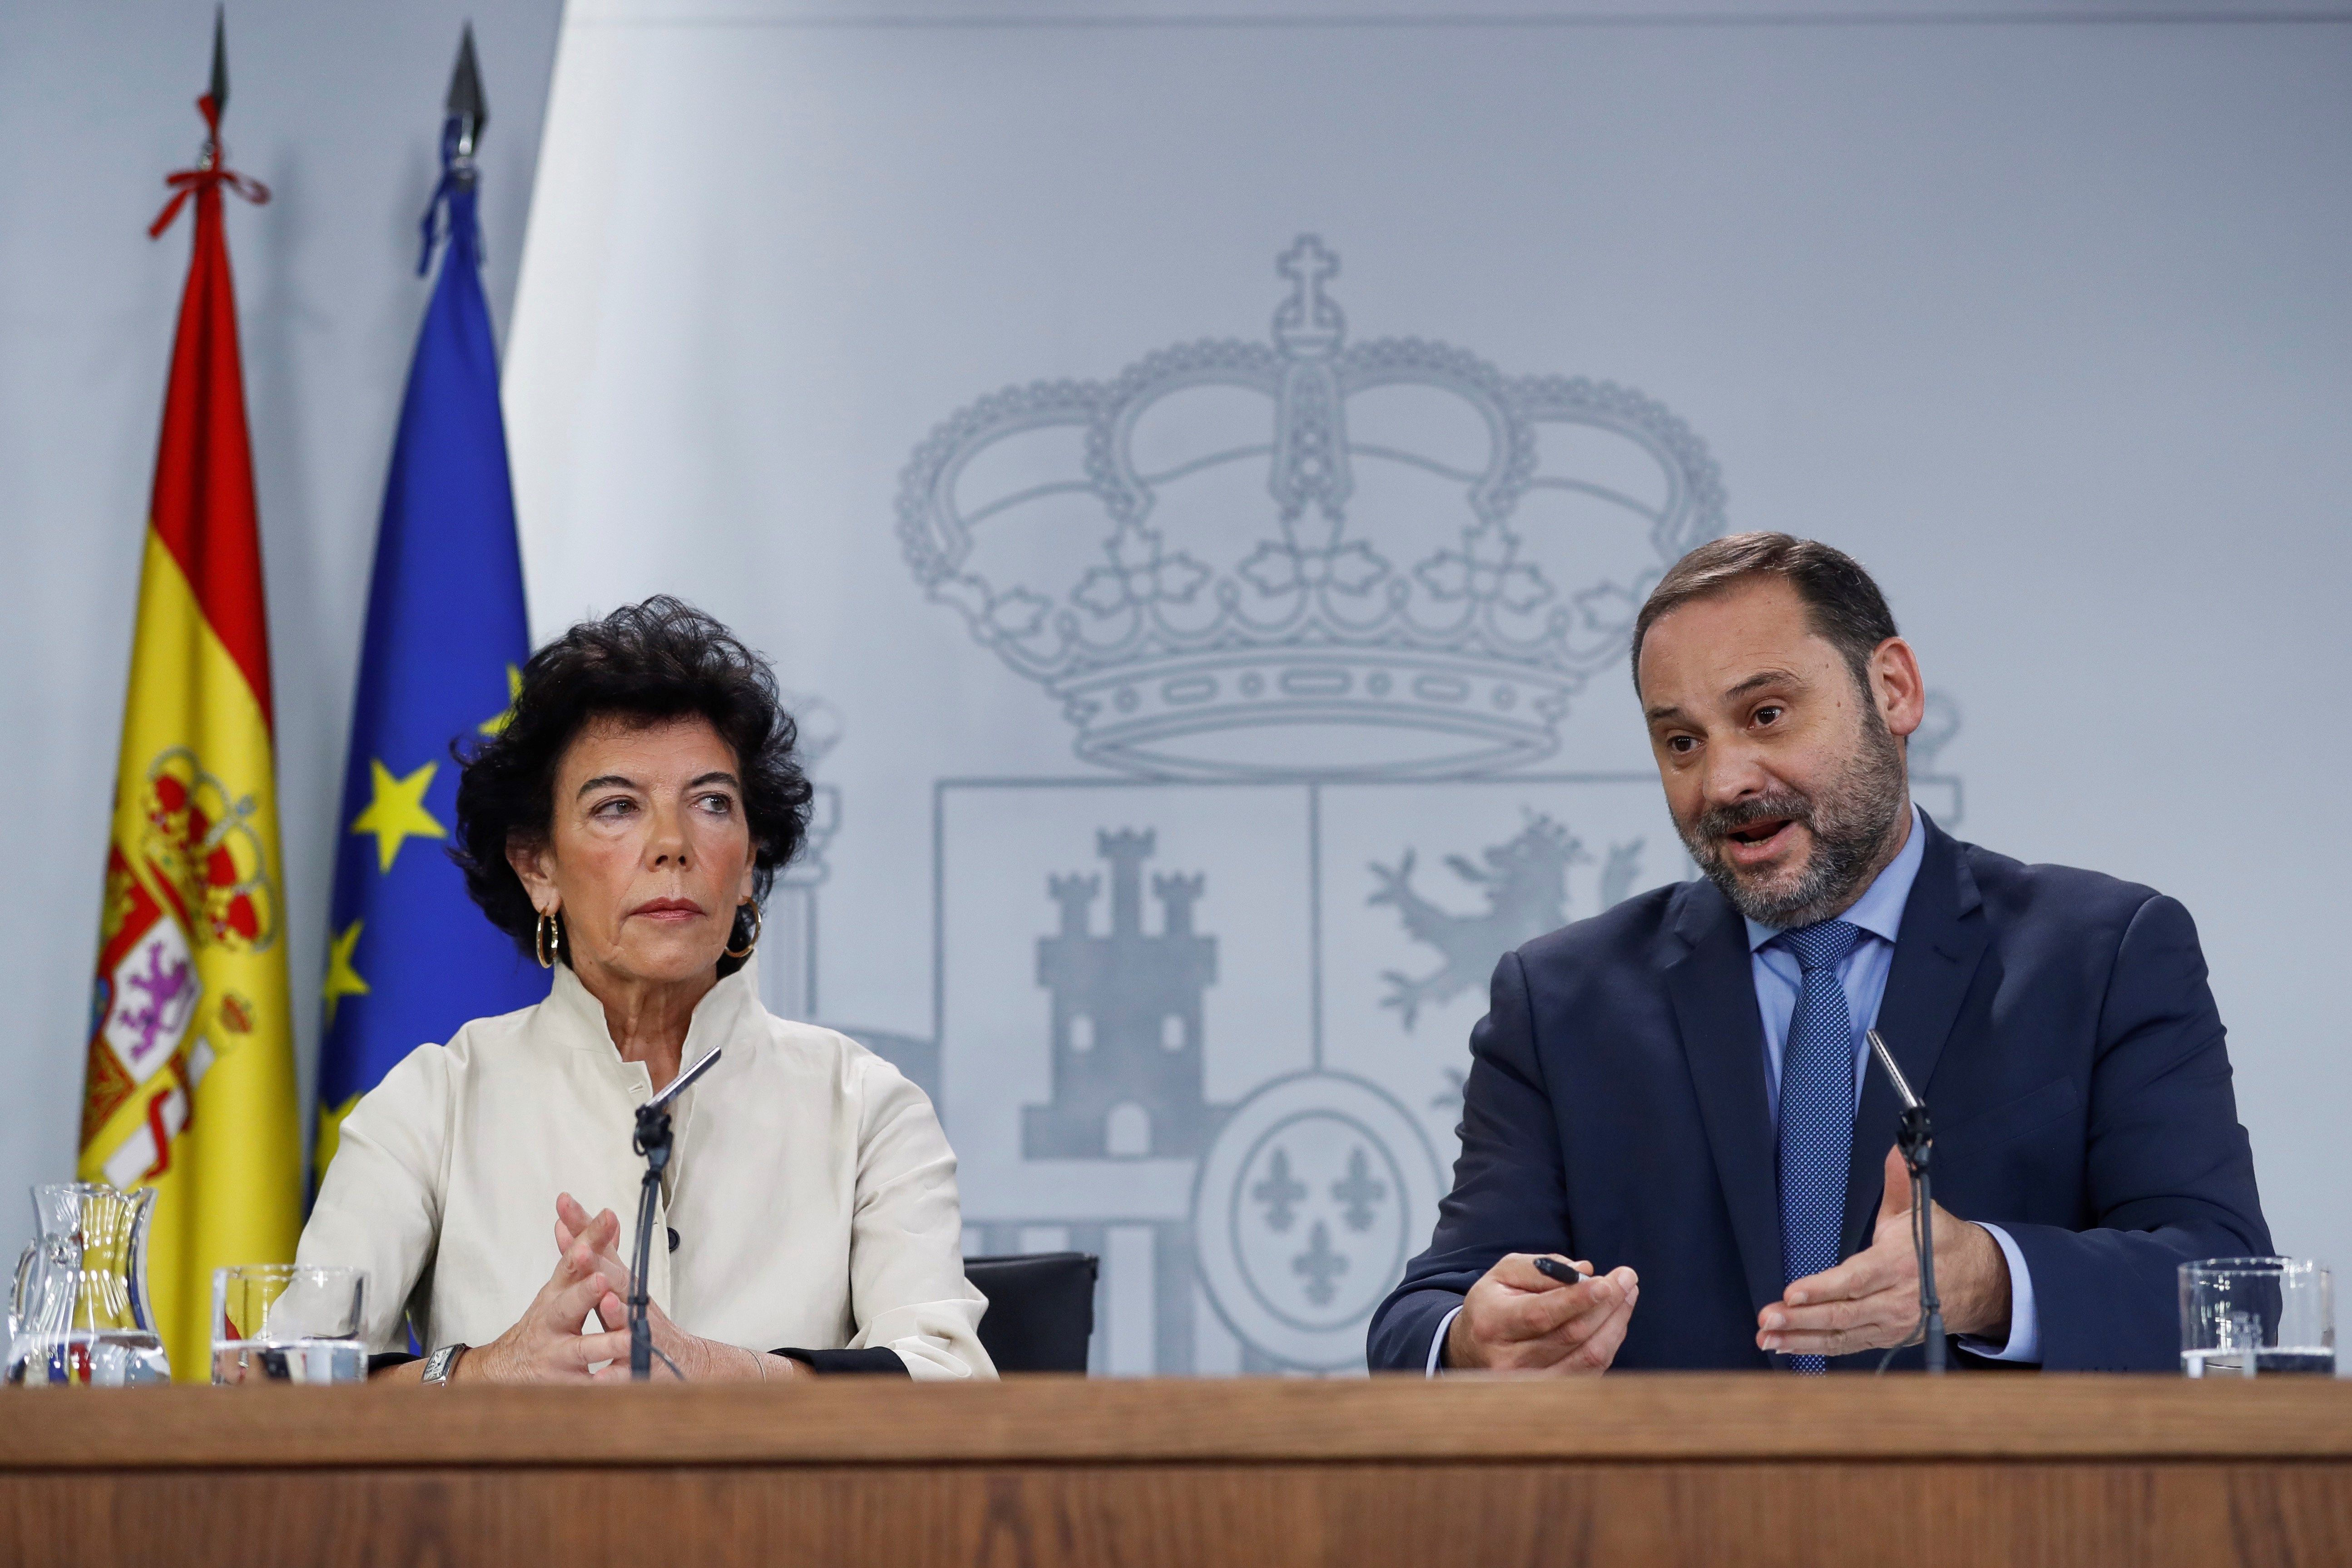 El ministro de Fomento José Luis Ábalos, y la ministra portavoz Isabel Celaá, durante la rueda de prensa consejo ministros. EFE